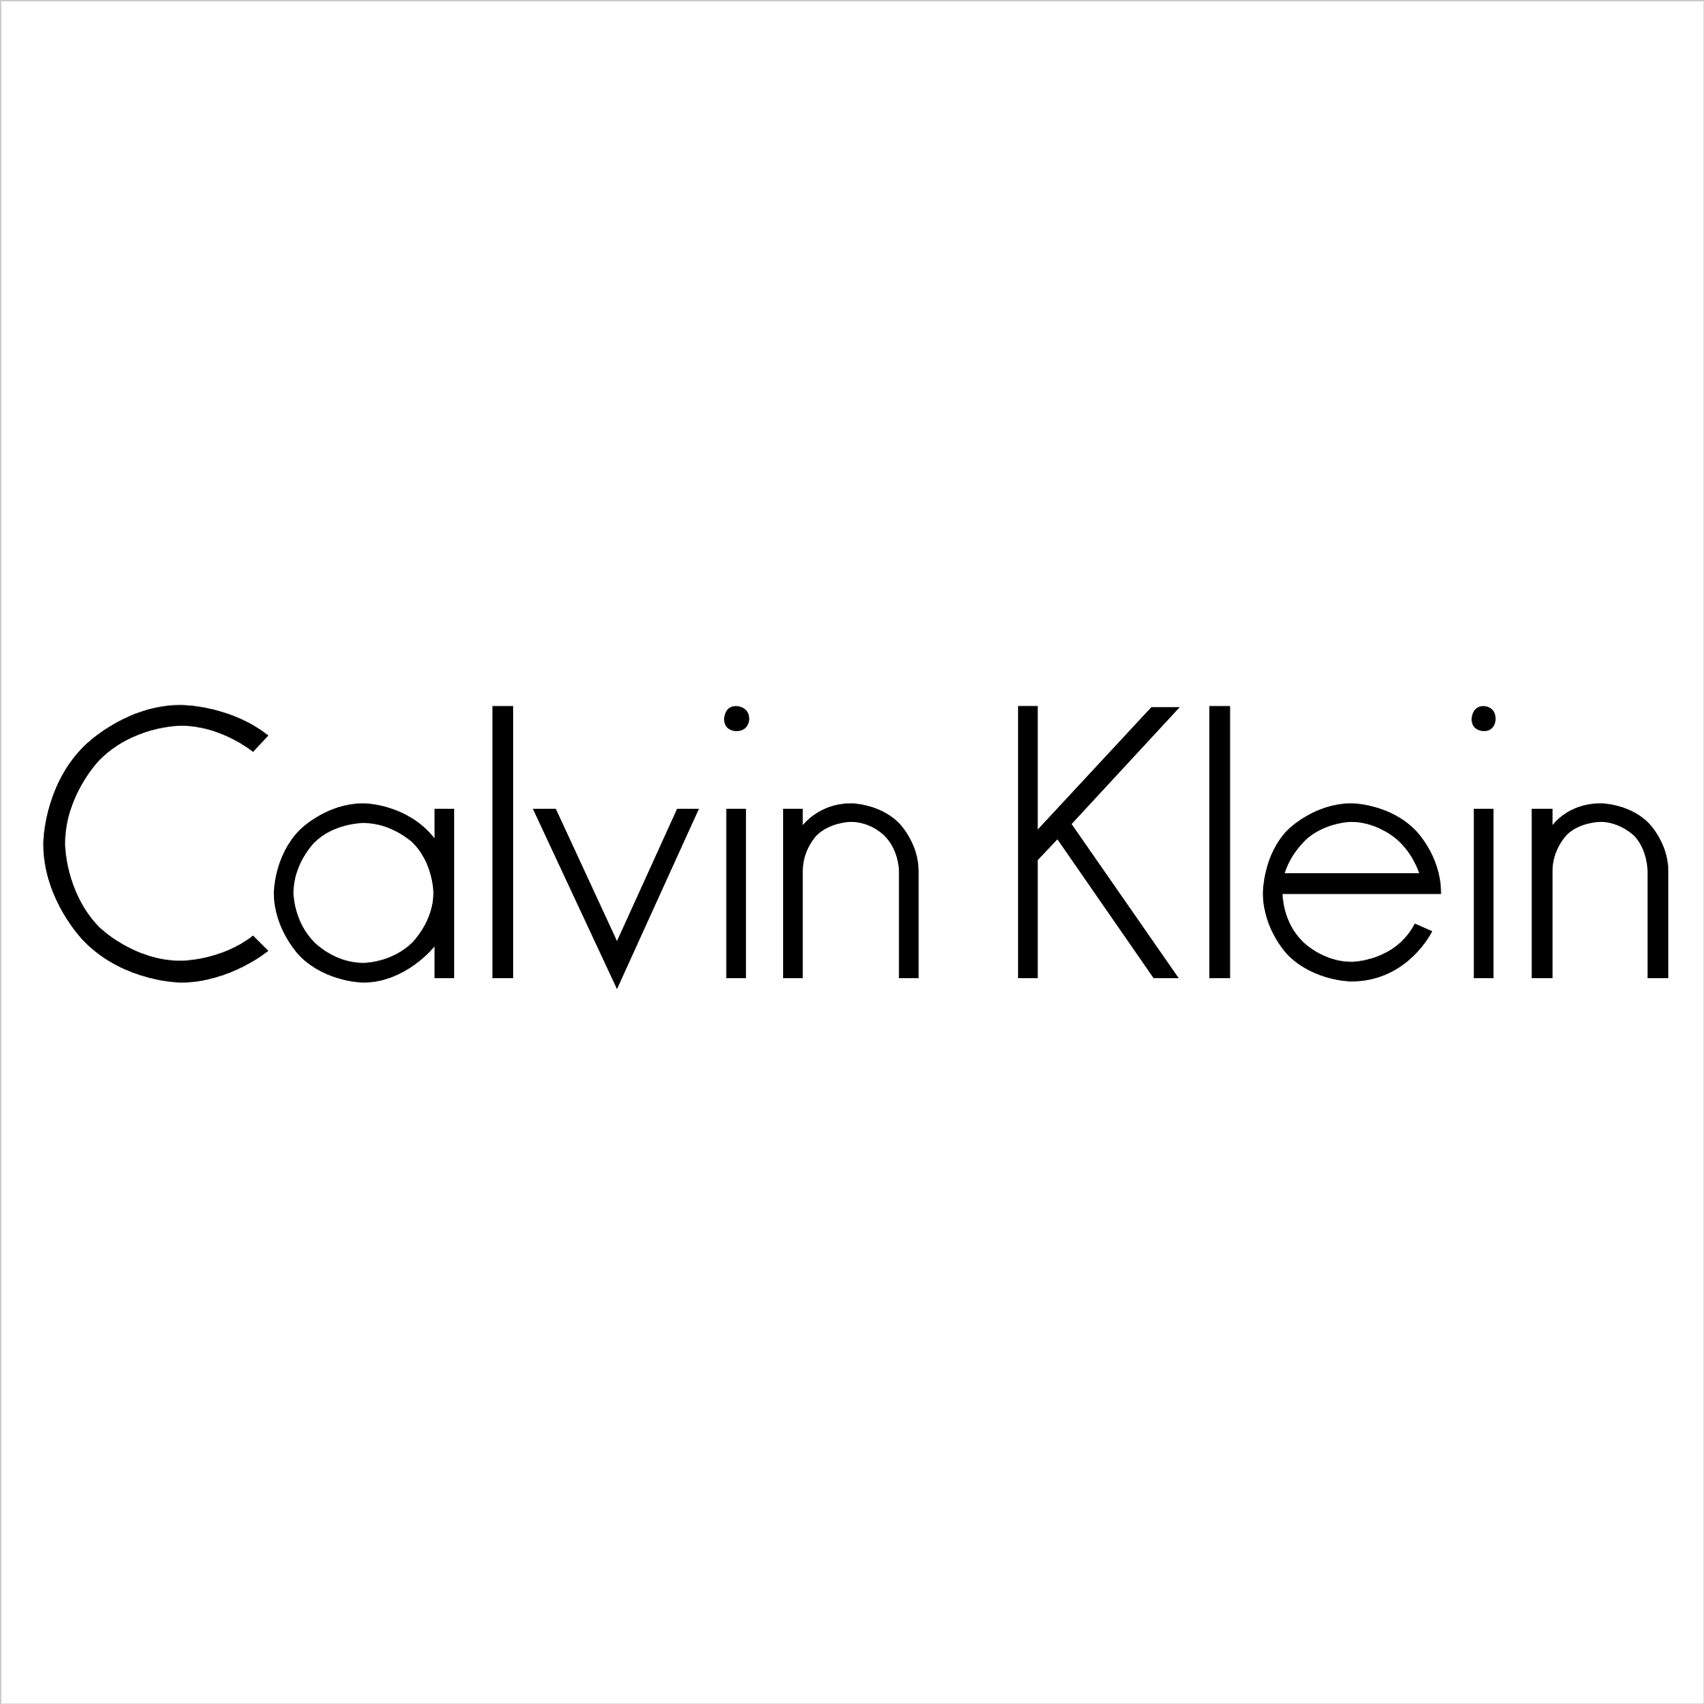 New Arrivals @ Calvin Klein